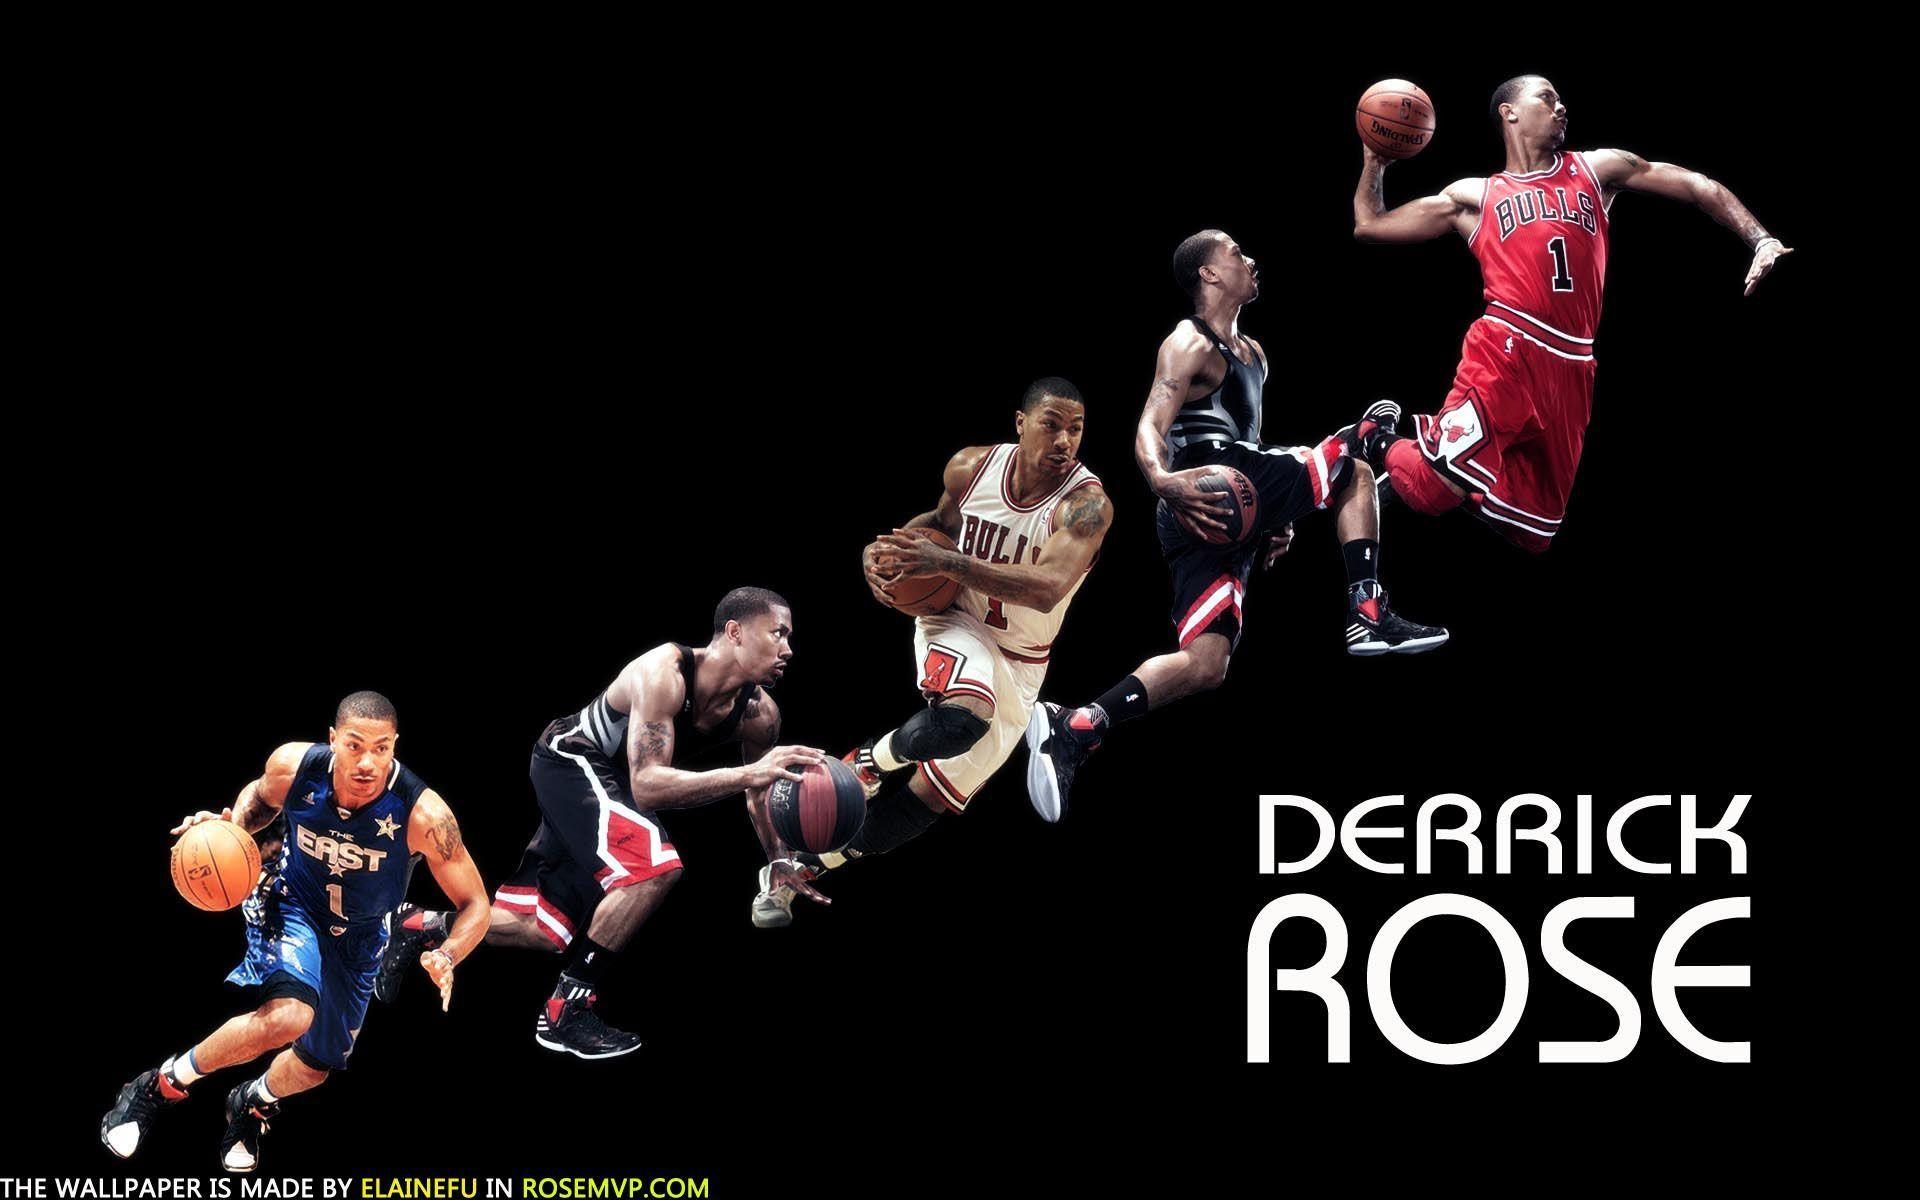 Derrick Rose Dunk Wallpaper. Baller$. Derrick